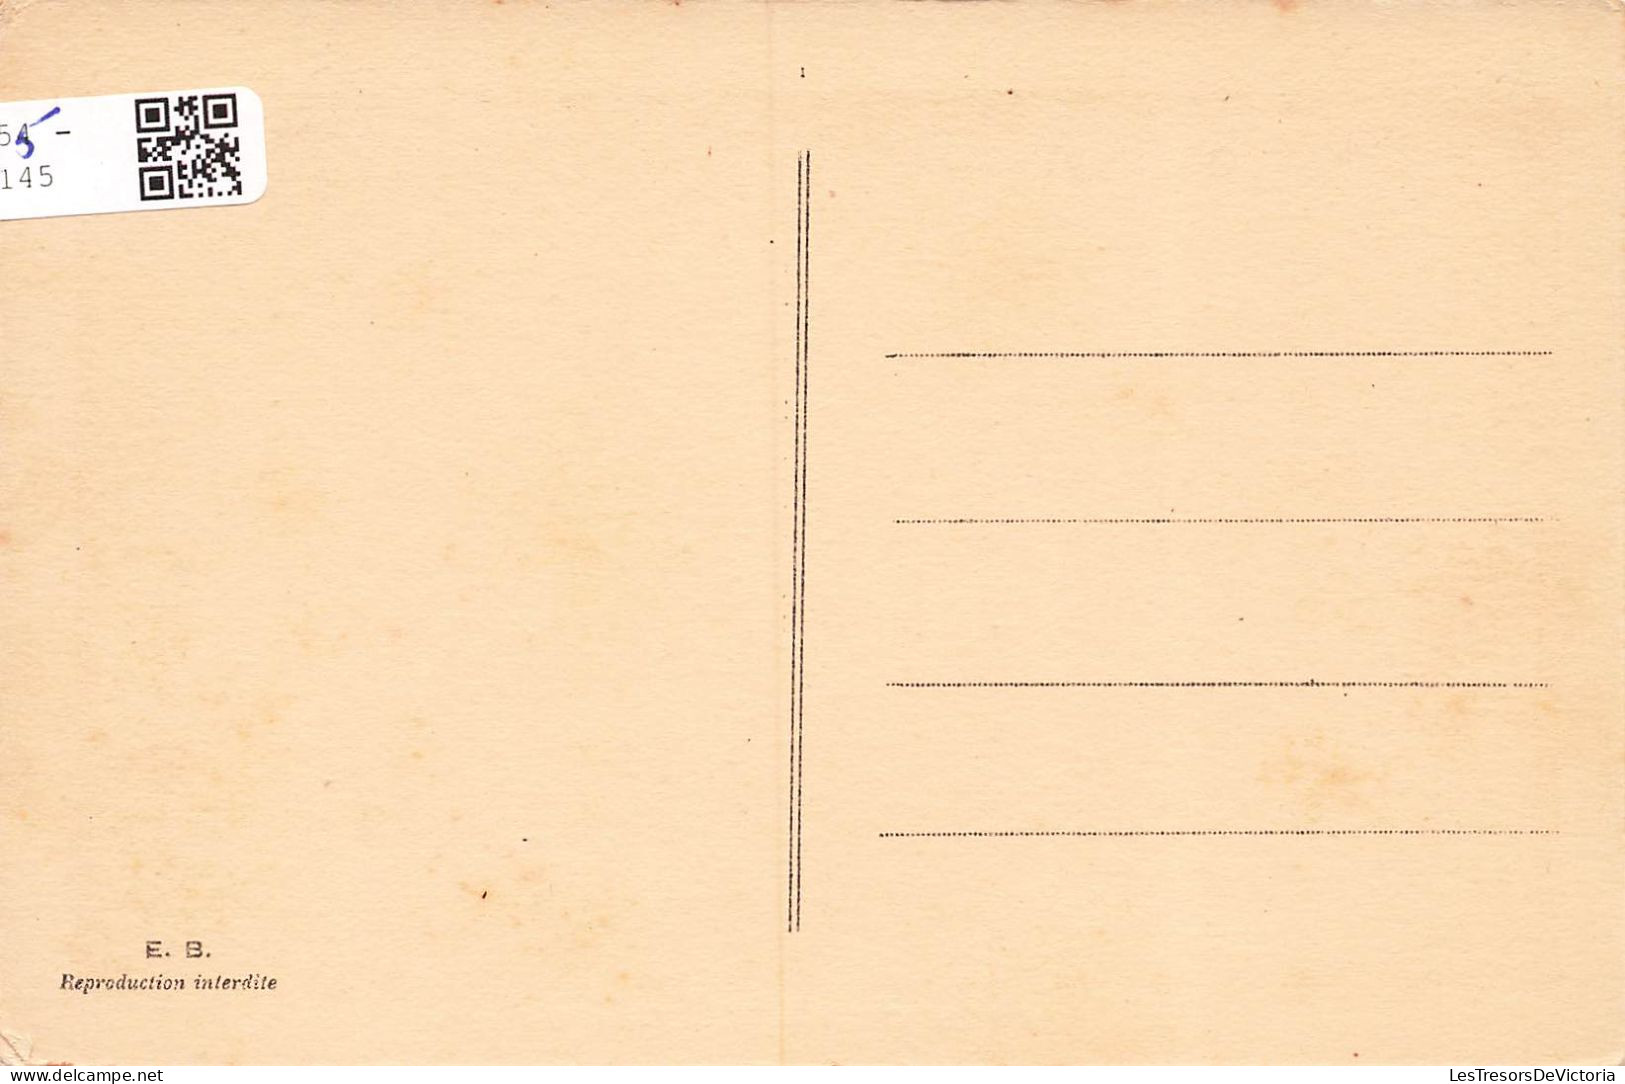 NOUVELLE CALEDONIE - Rivière  De Nassirah - Carte Postale Ancienne - Nouvelle-Calédonie